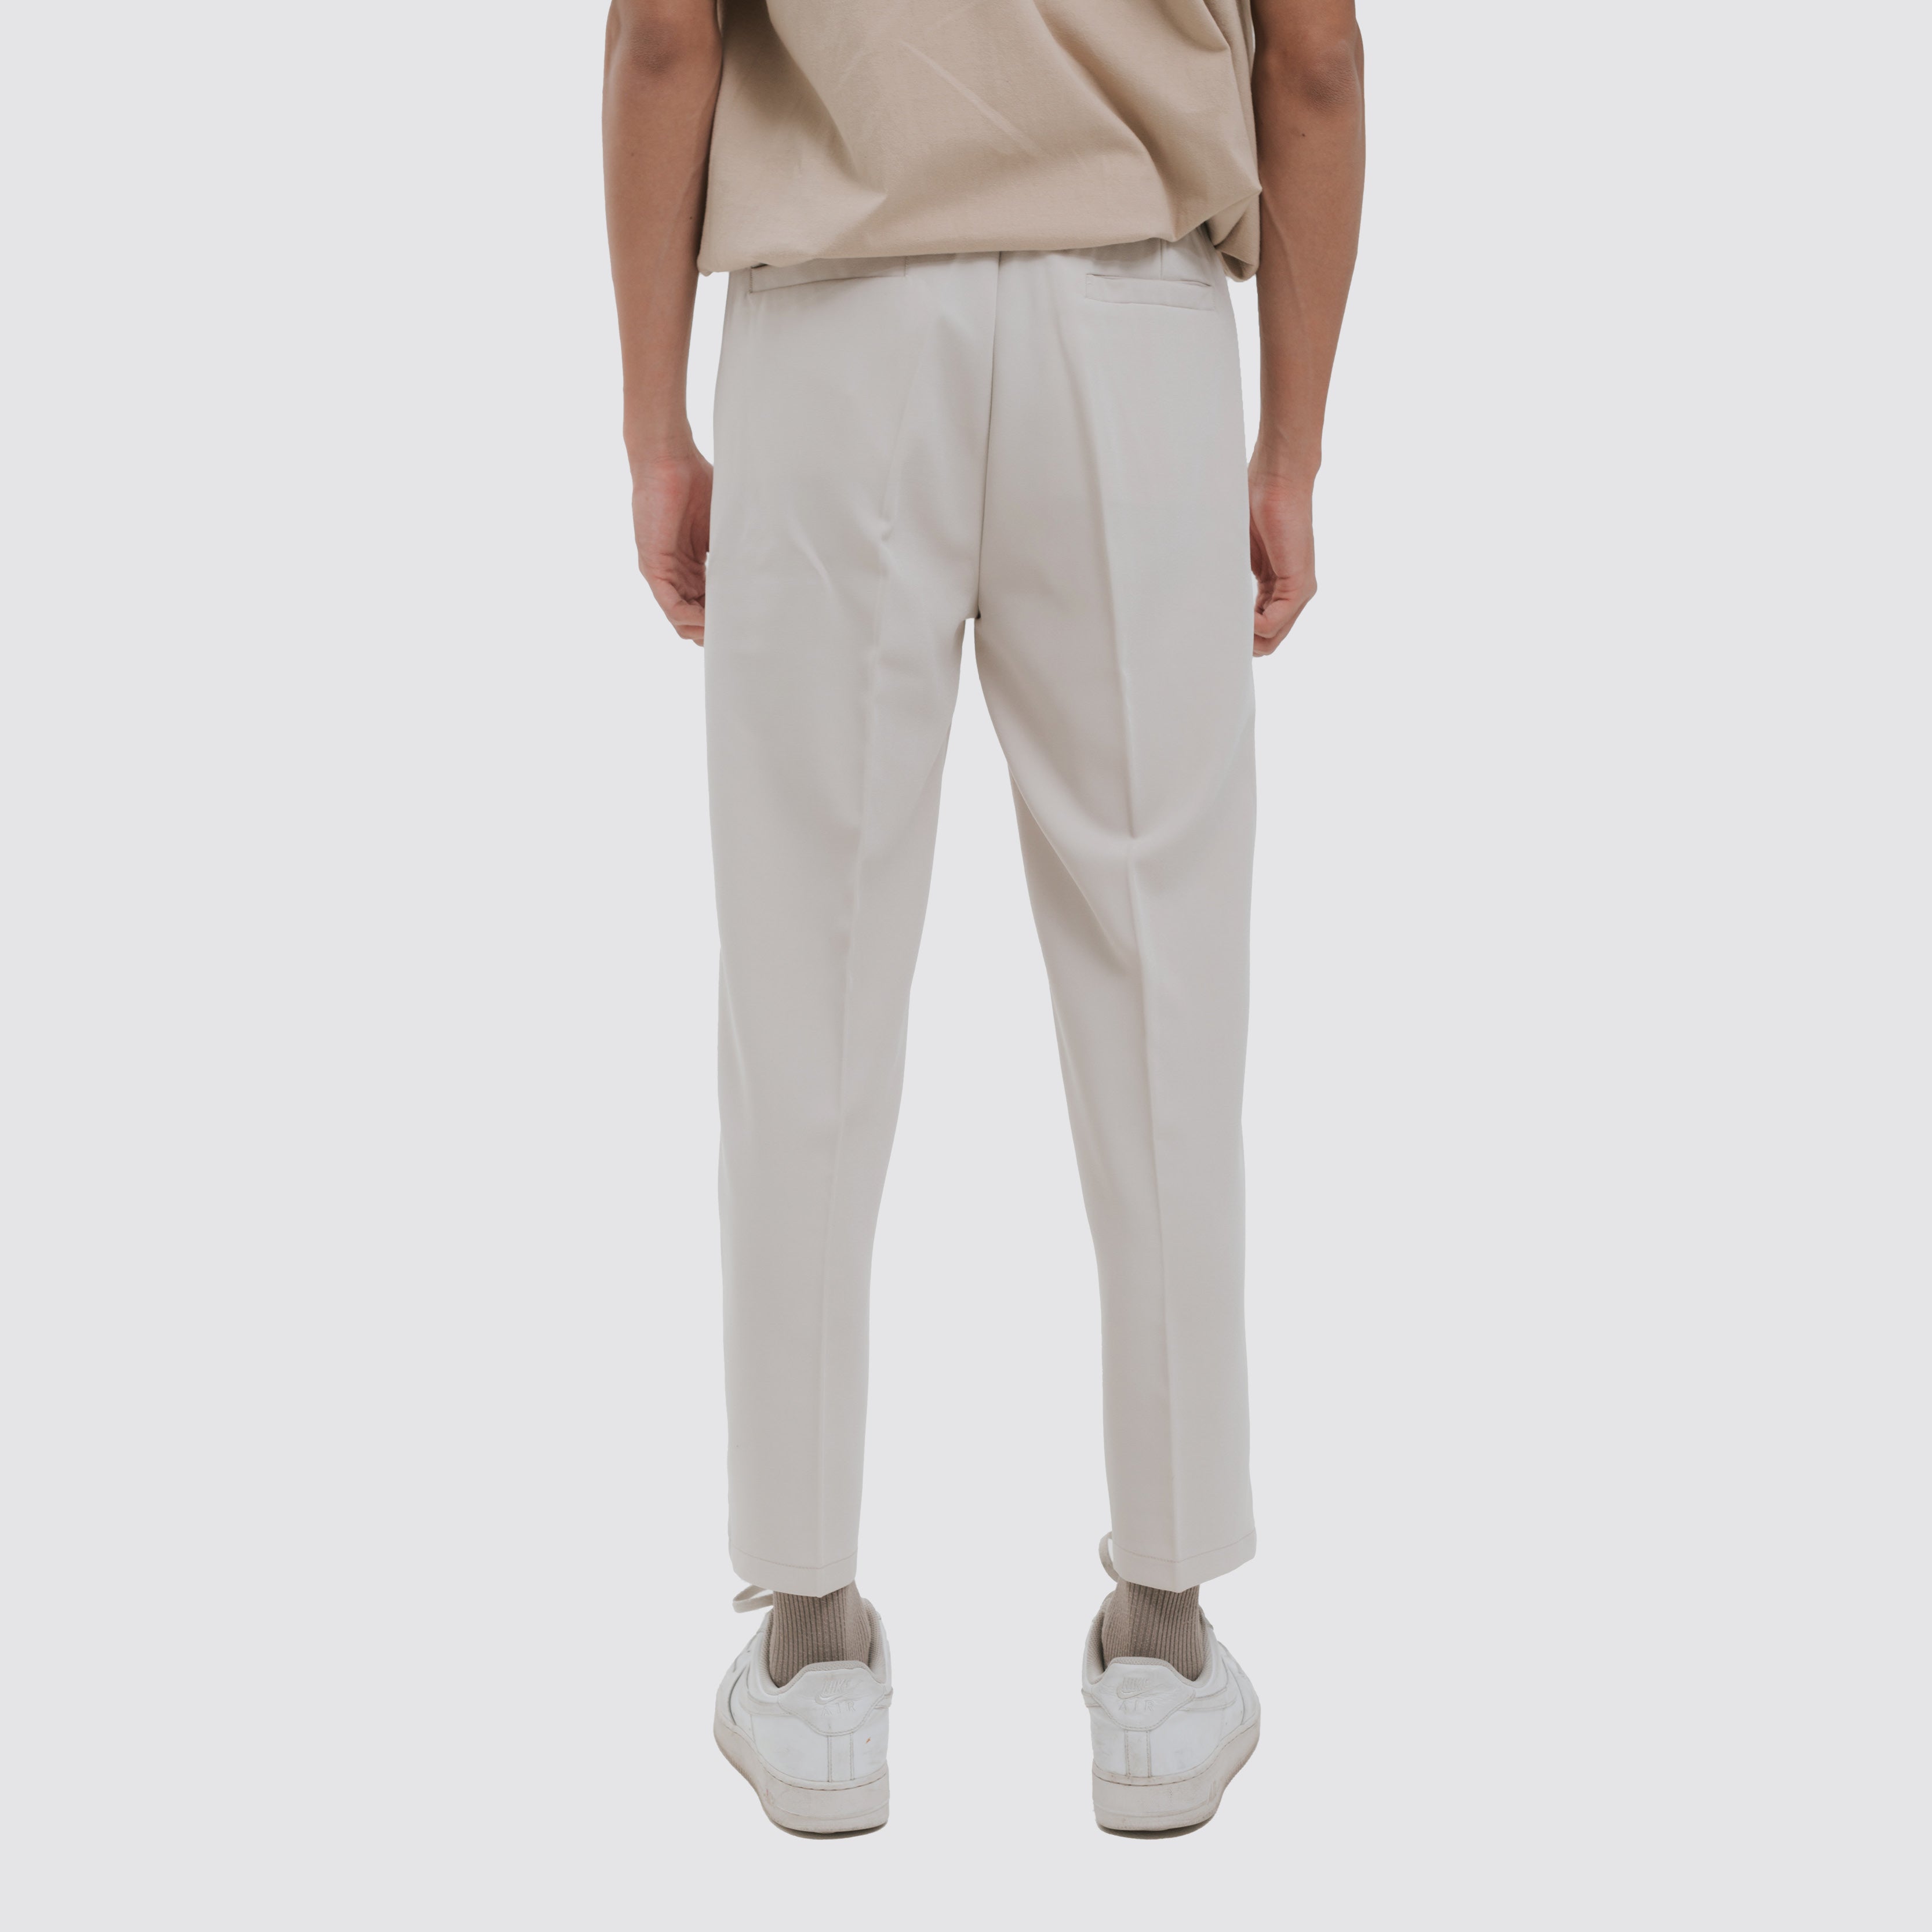 Prowl Set - Cotton Long Top and Pants Set - White Colour – OurDve